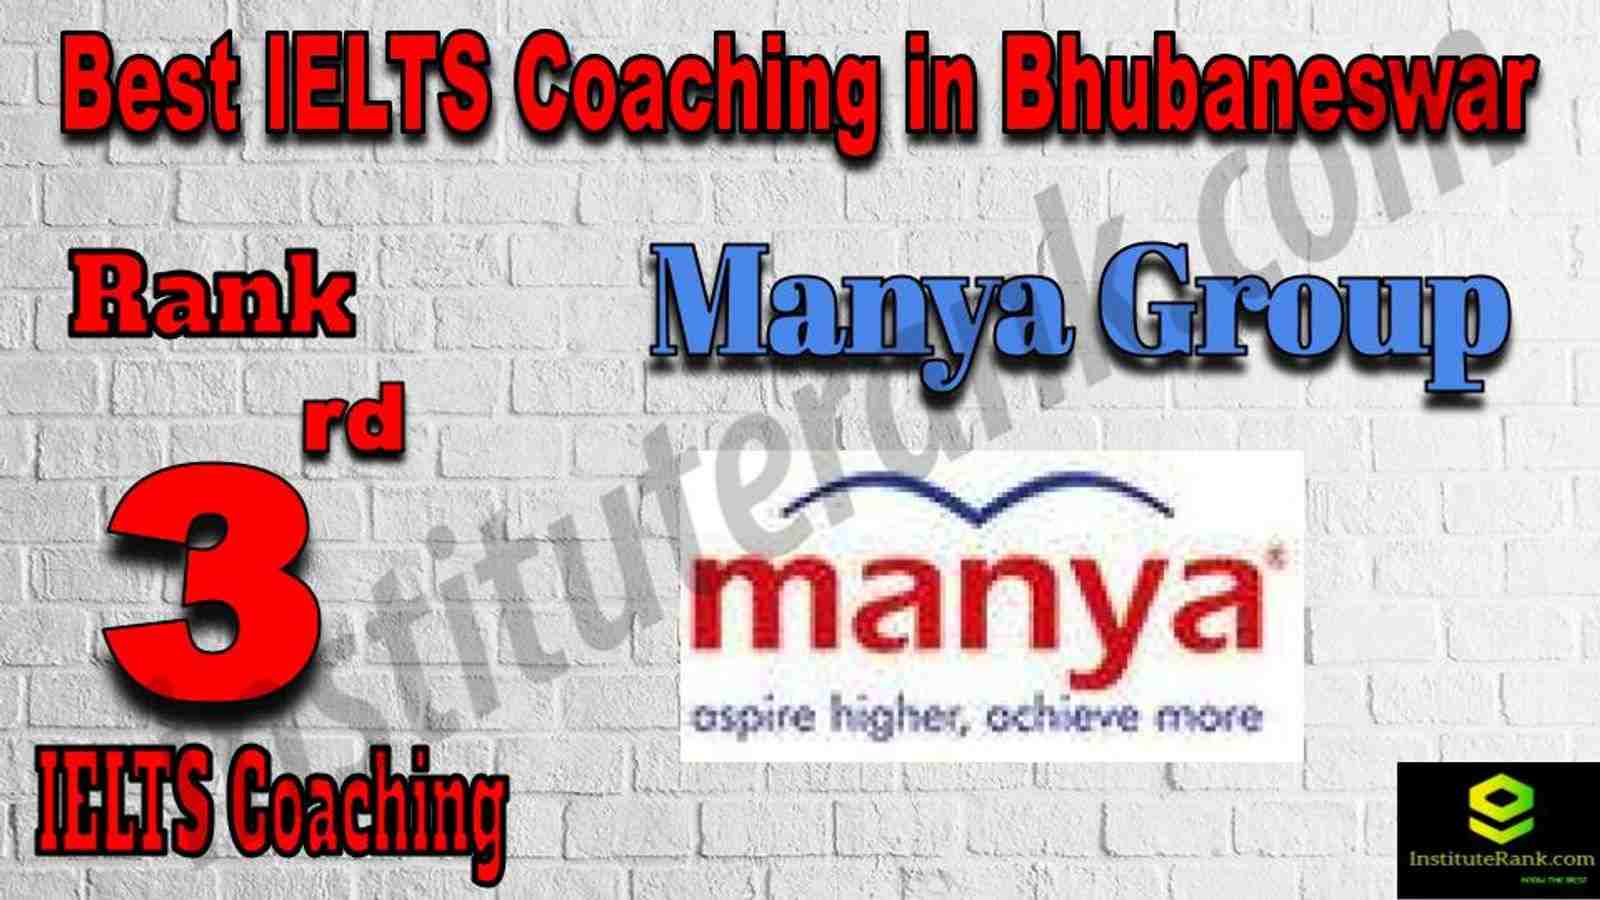 3rd Best IELTS Coaching in Bhubaneswar